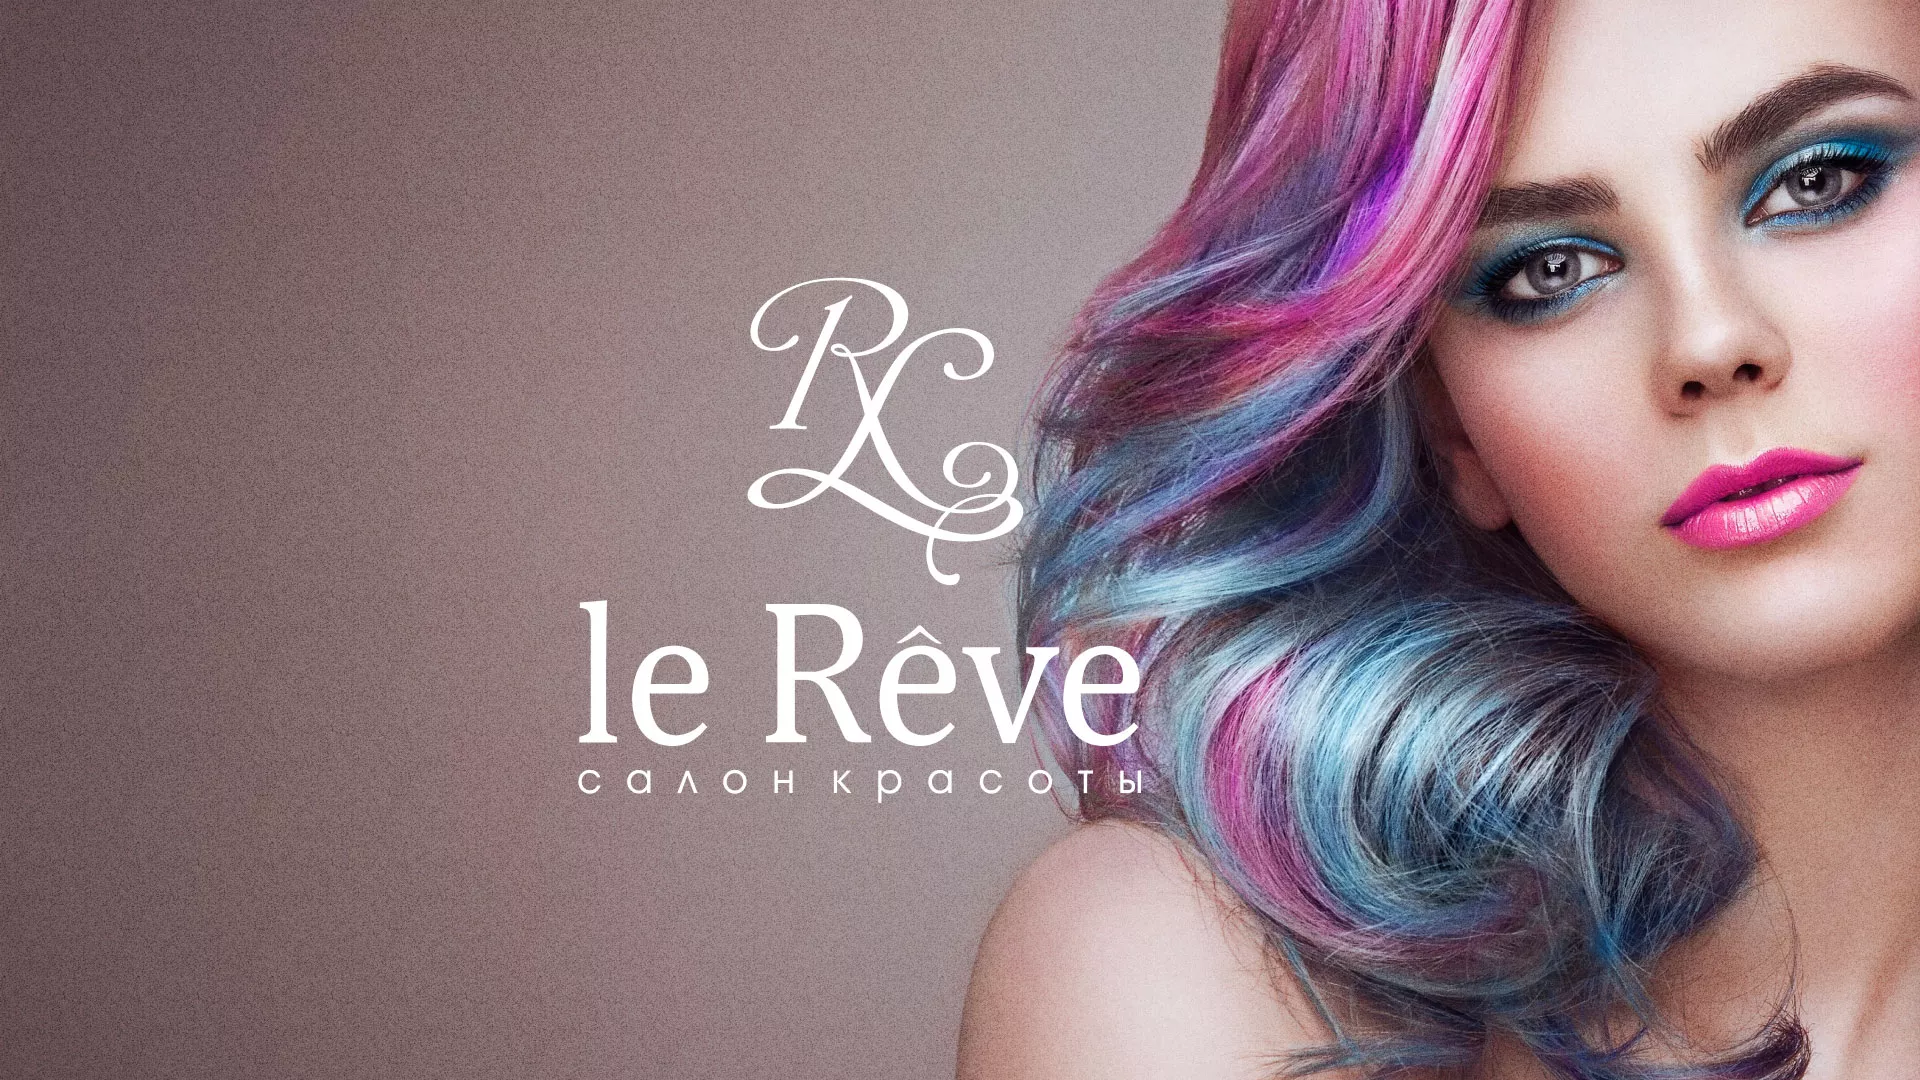 Создание сайта для салона красоты «Le Reve» в Ногинске